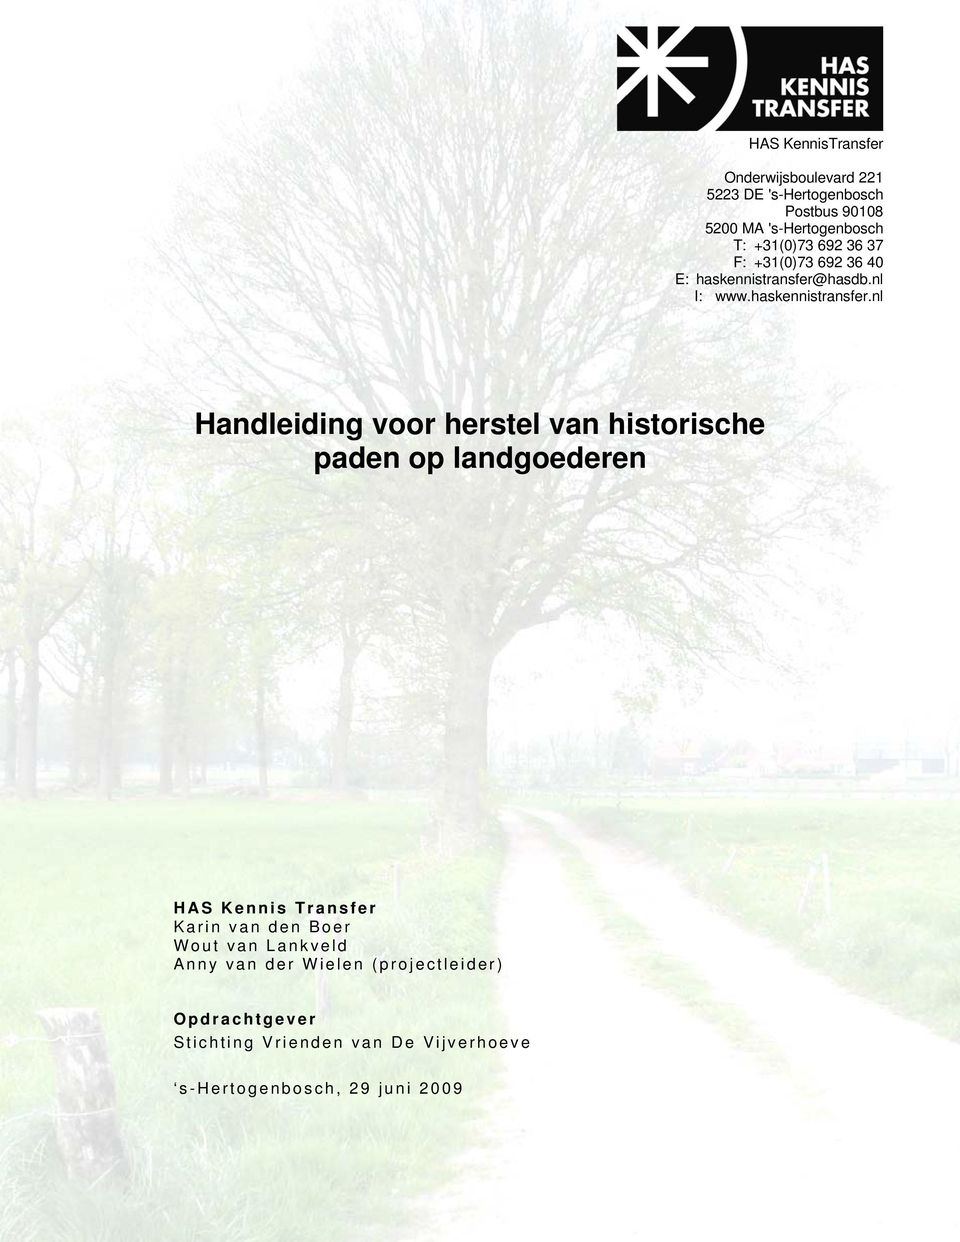 hasdb.nl I: www.haskennistransfer.